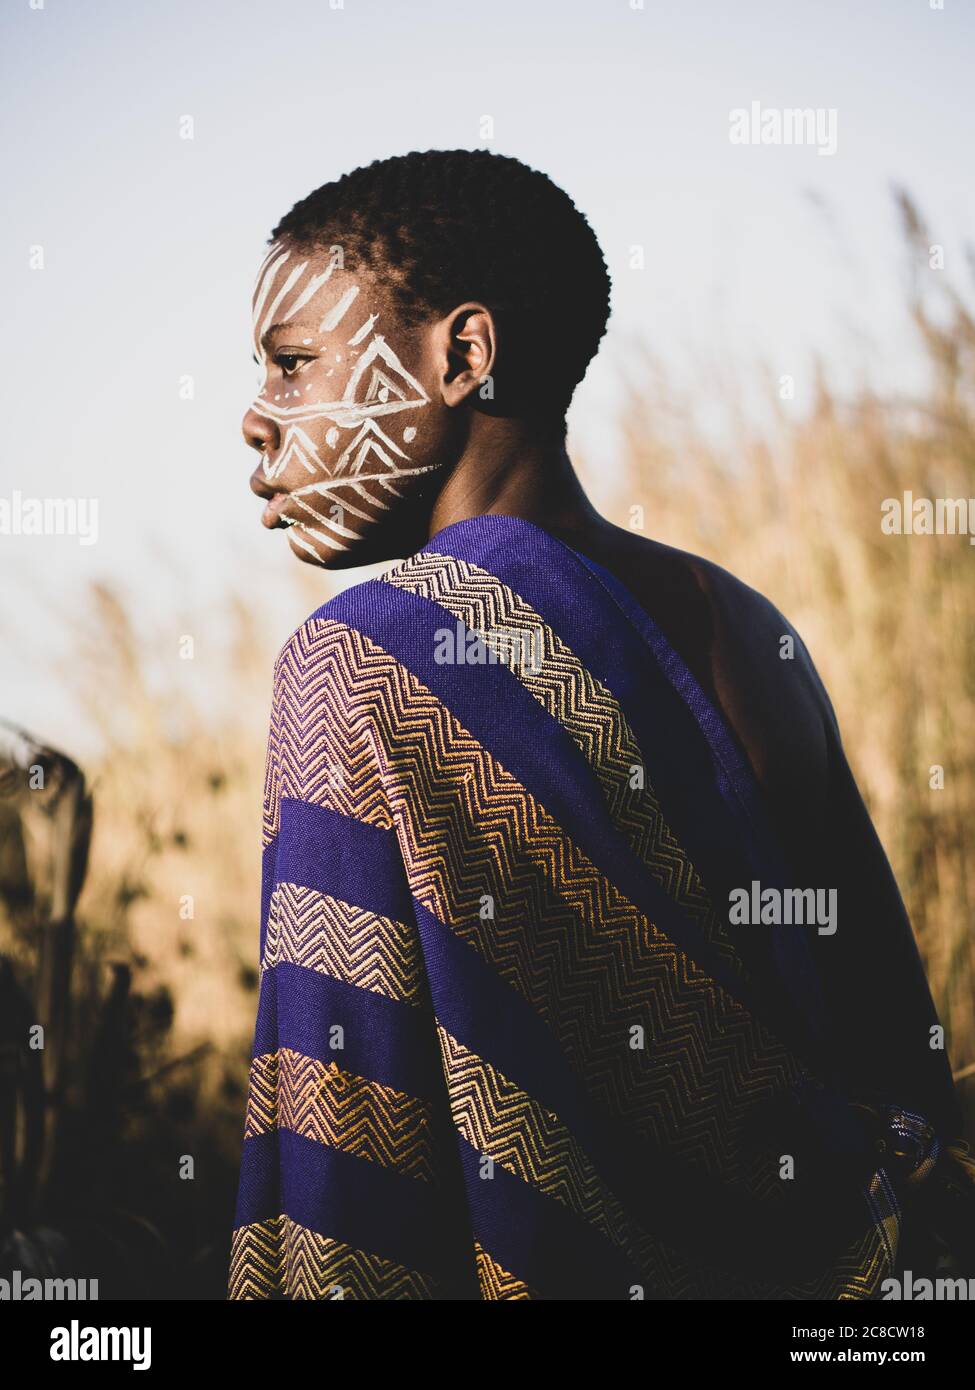 ritratto di un ragazzo africano con pittura etnica del viso e vestirsi nel cespuglio Foto Stock